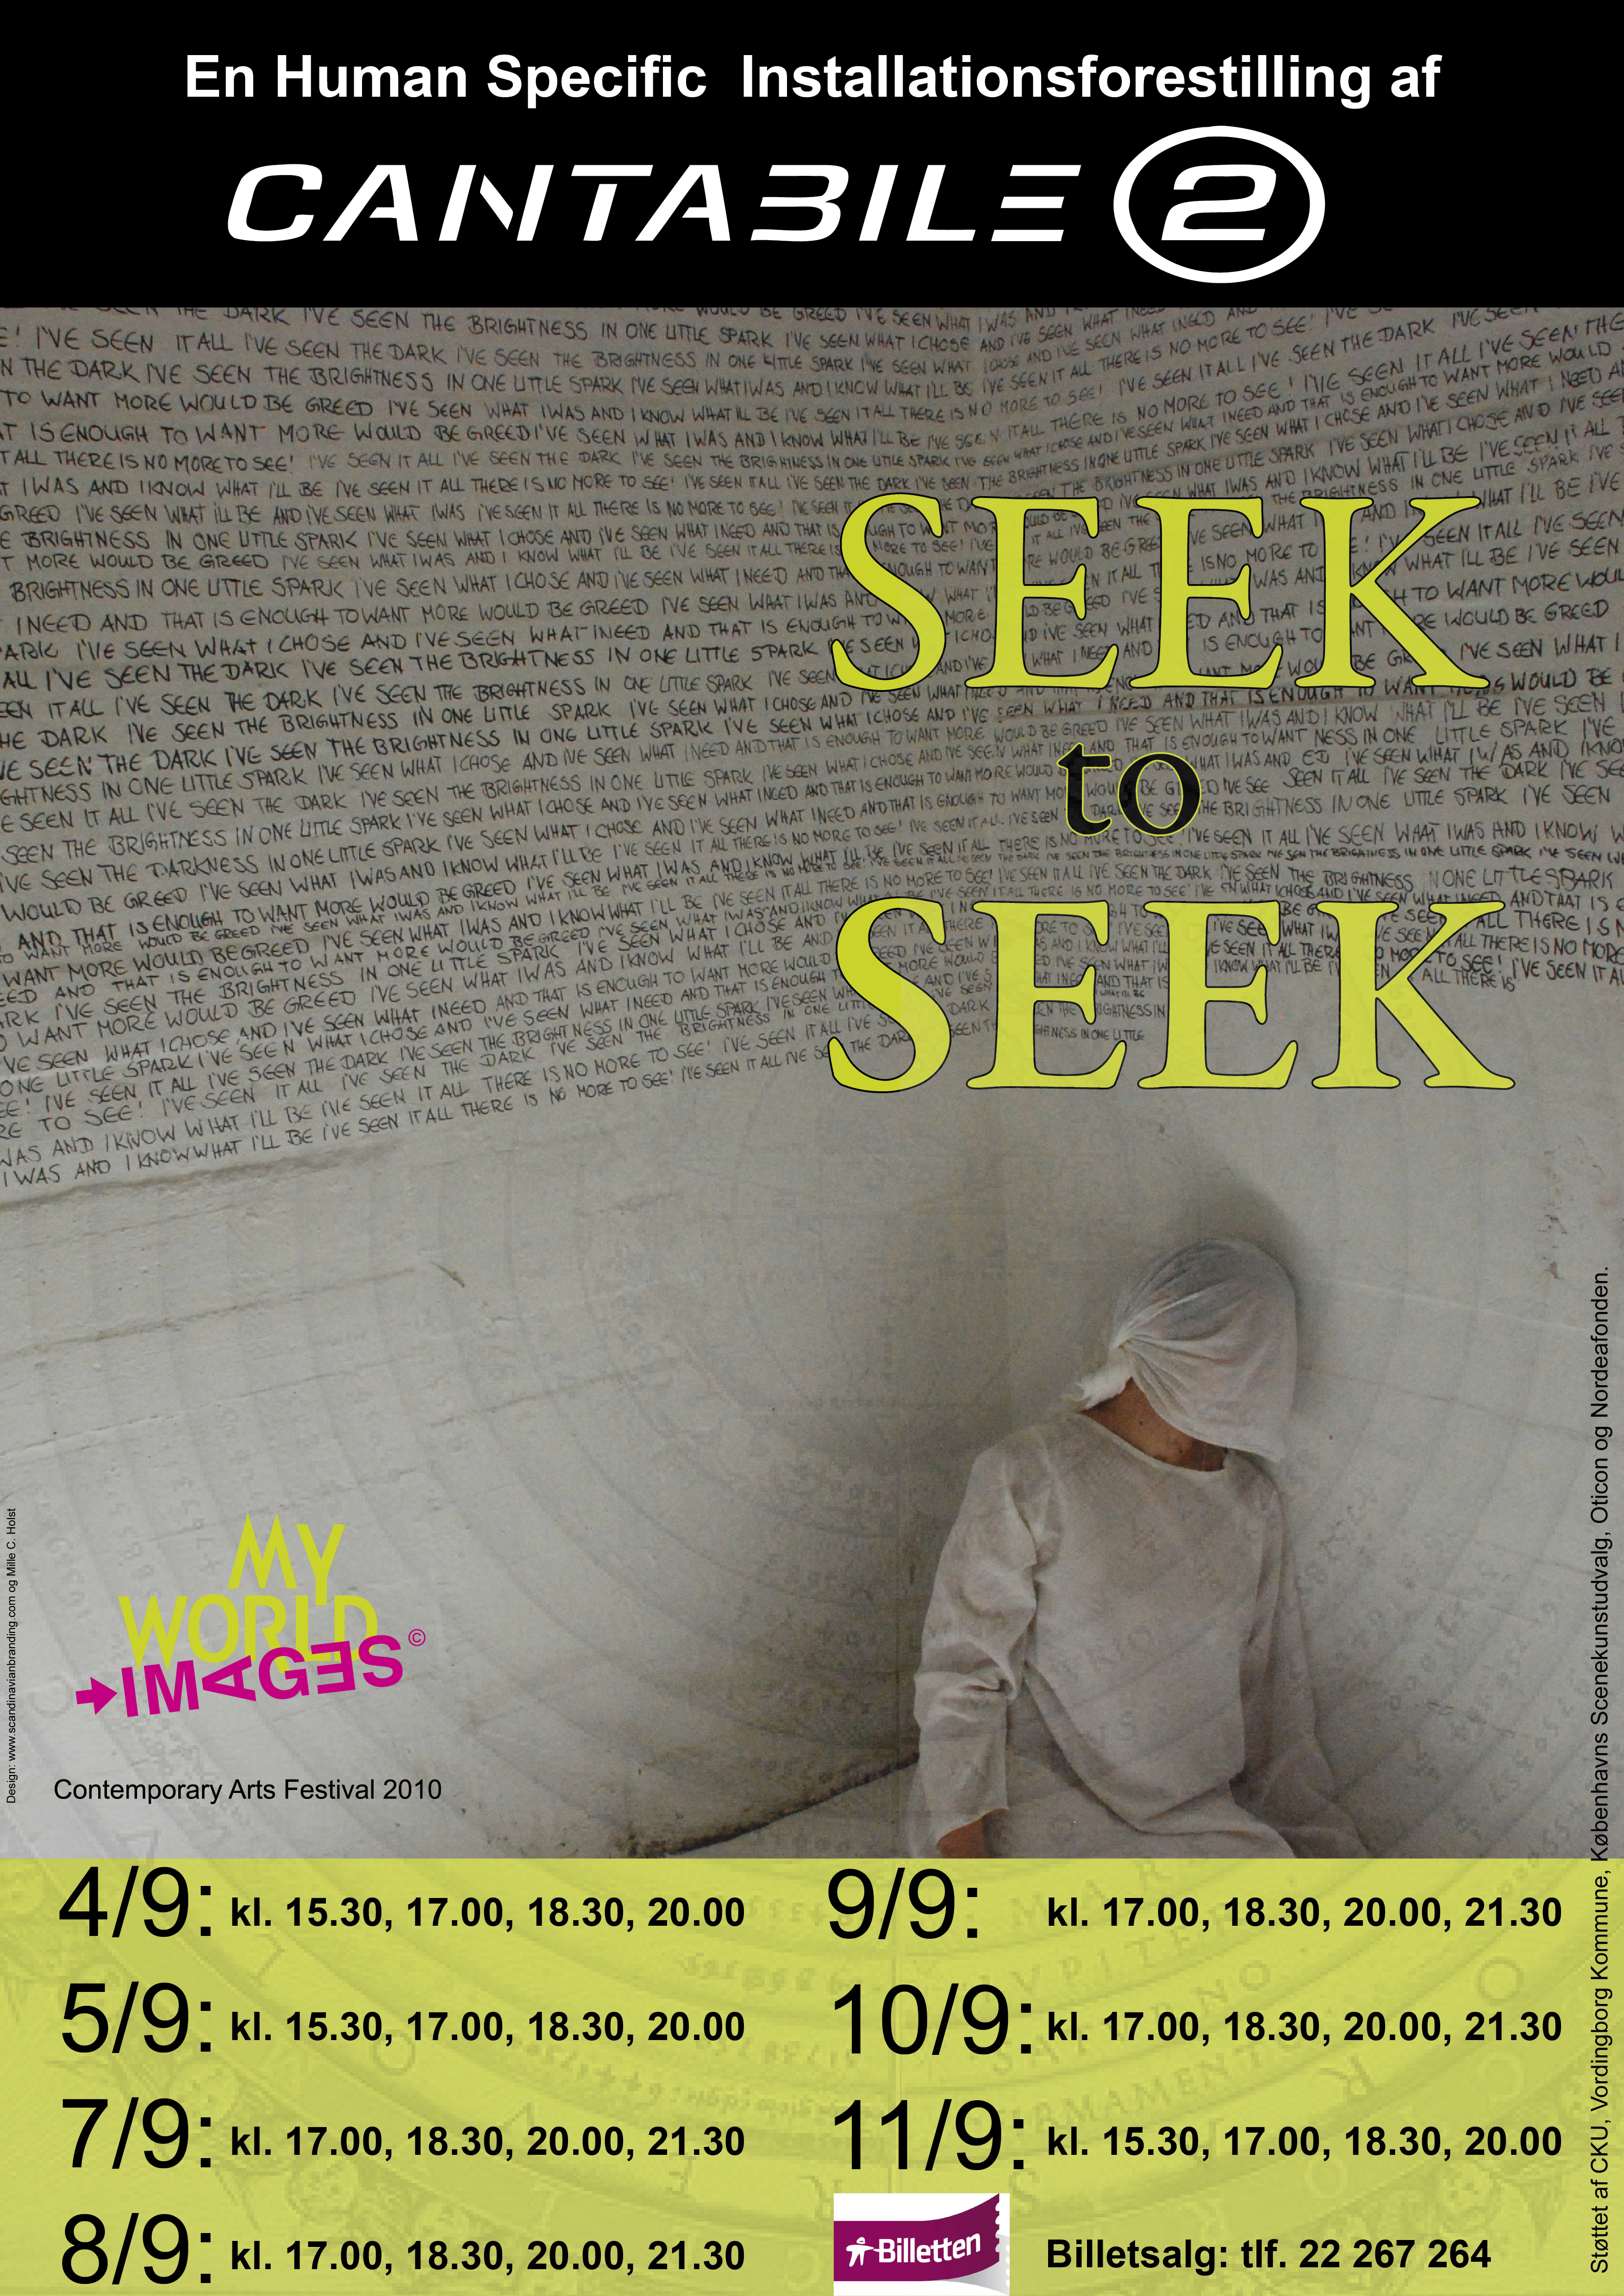 Seek to seek